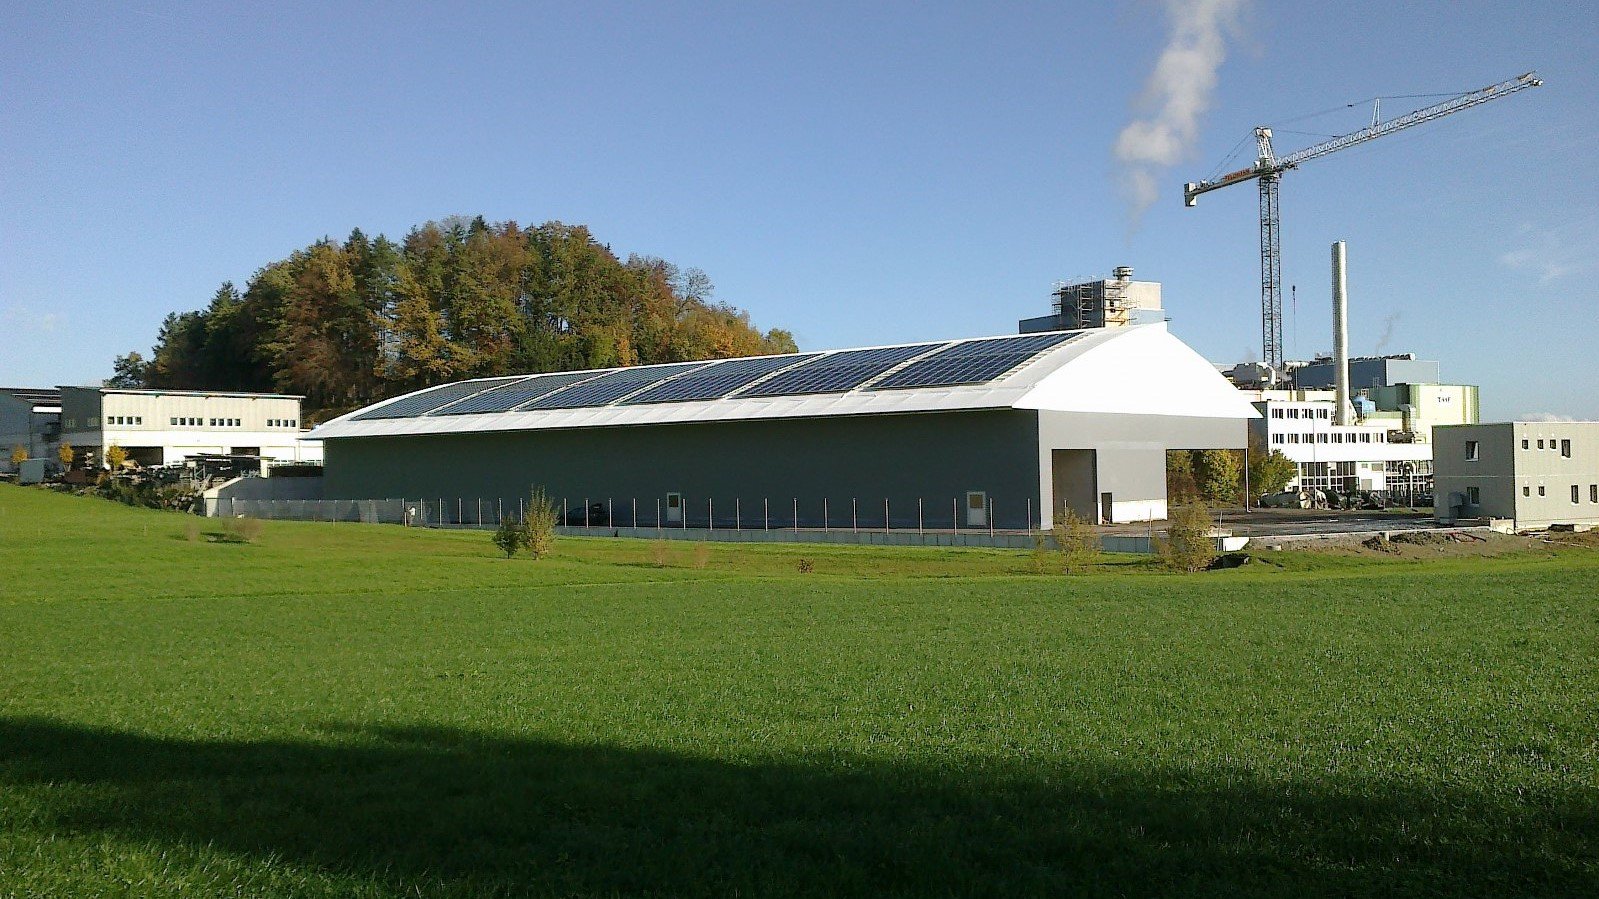 solpaneler på taket av hallen